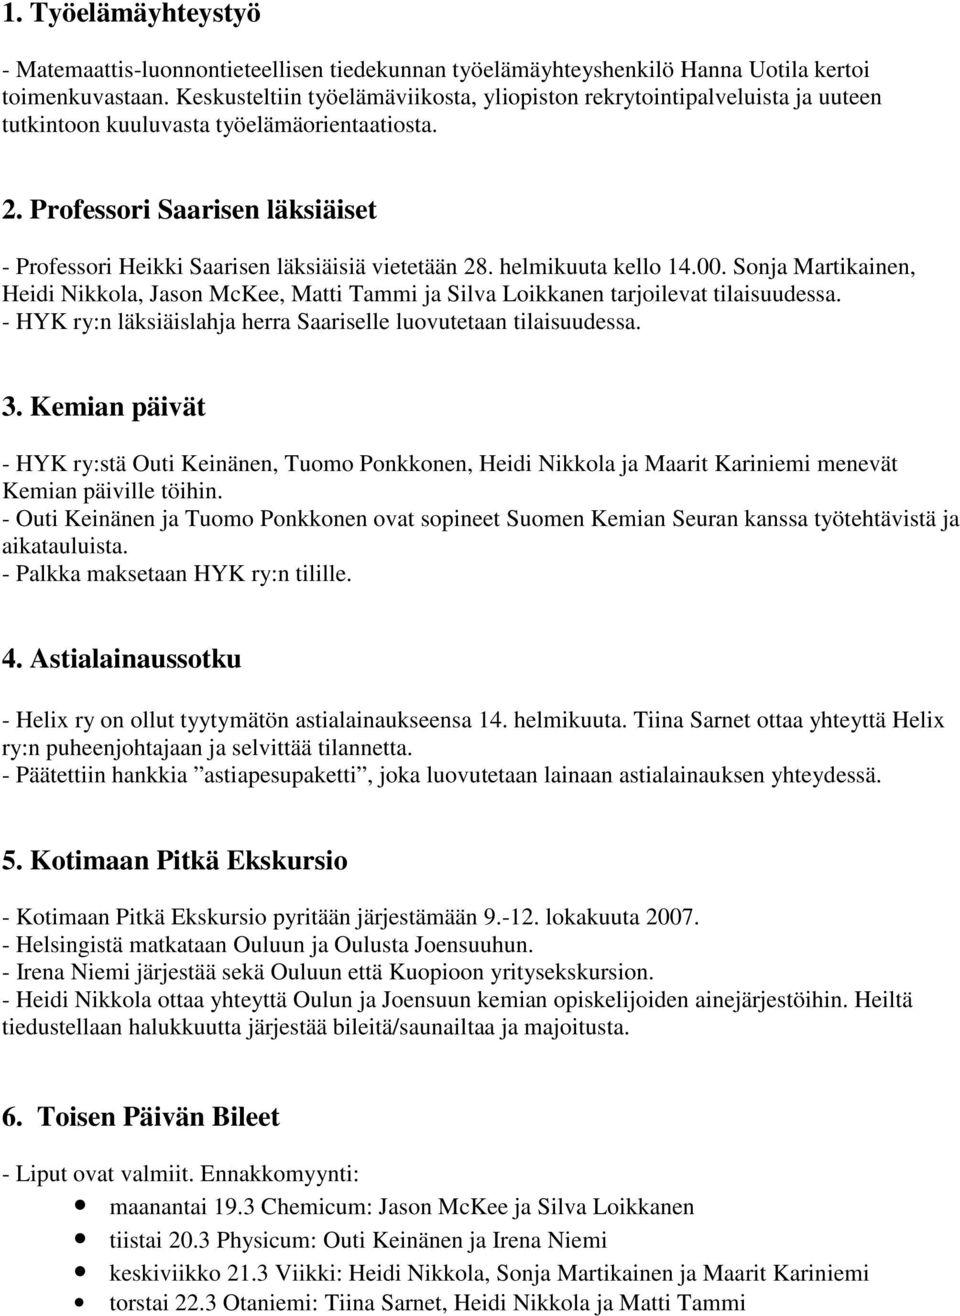 Professori Saarisen läksiäiset - Professori Heikki Saarisen läksiäisiä vietetään 28. helmikuuta kello 14.00.